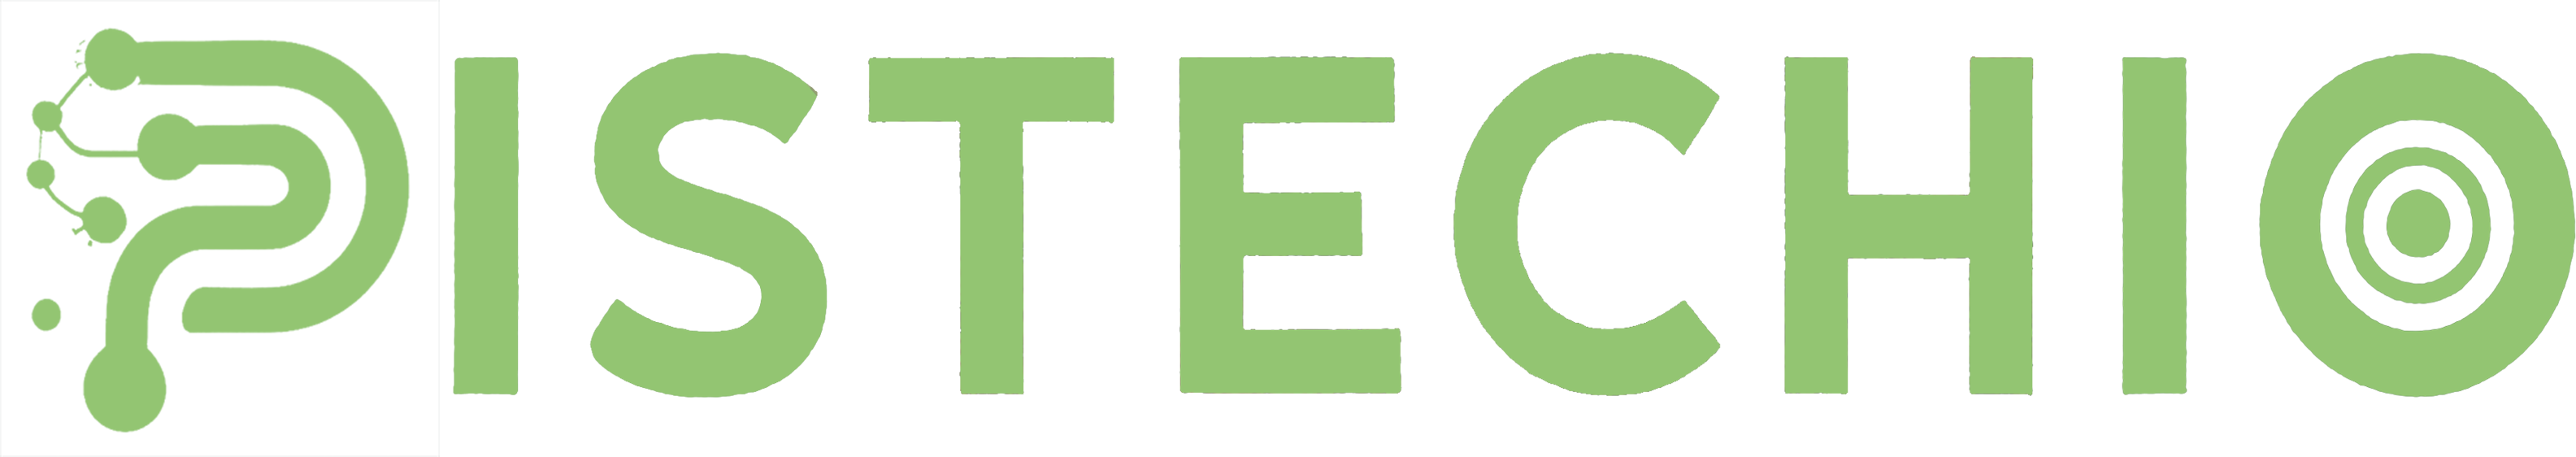 Pistechio.com Logo